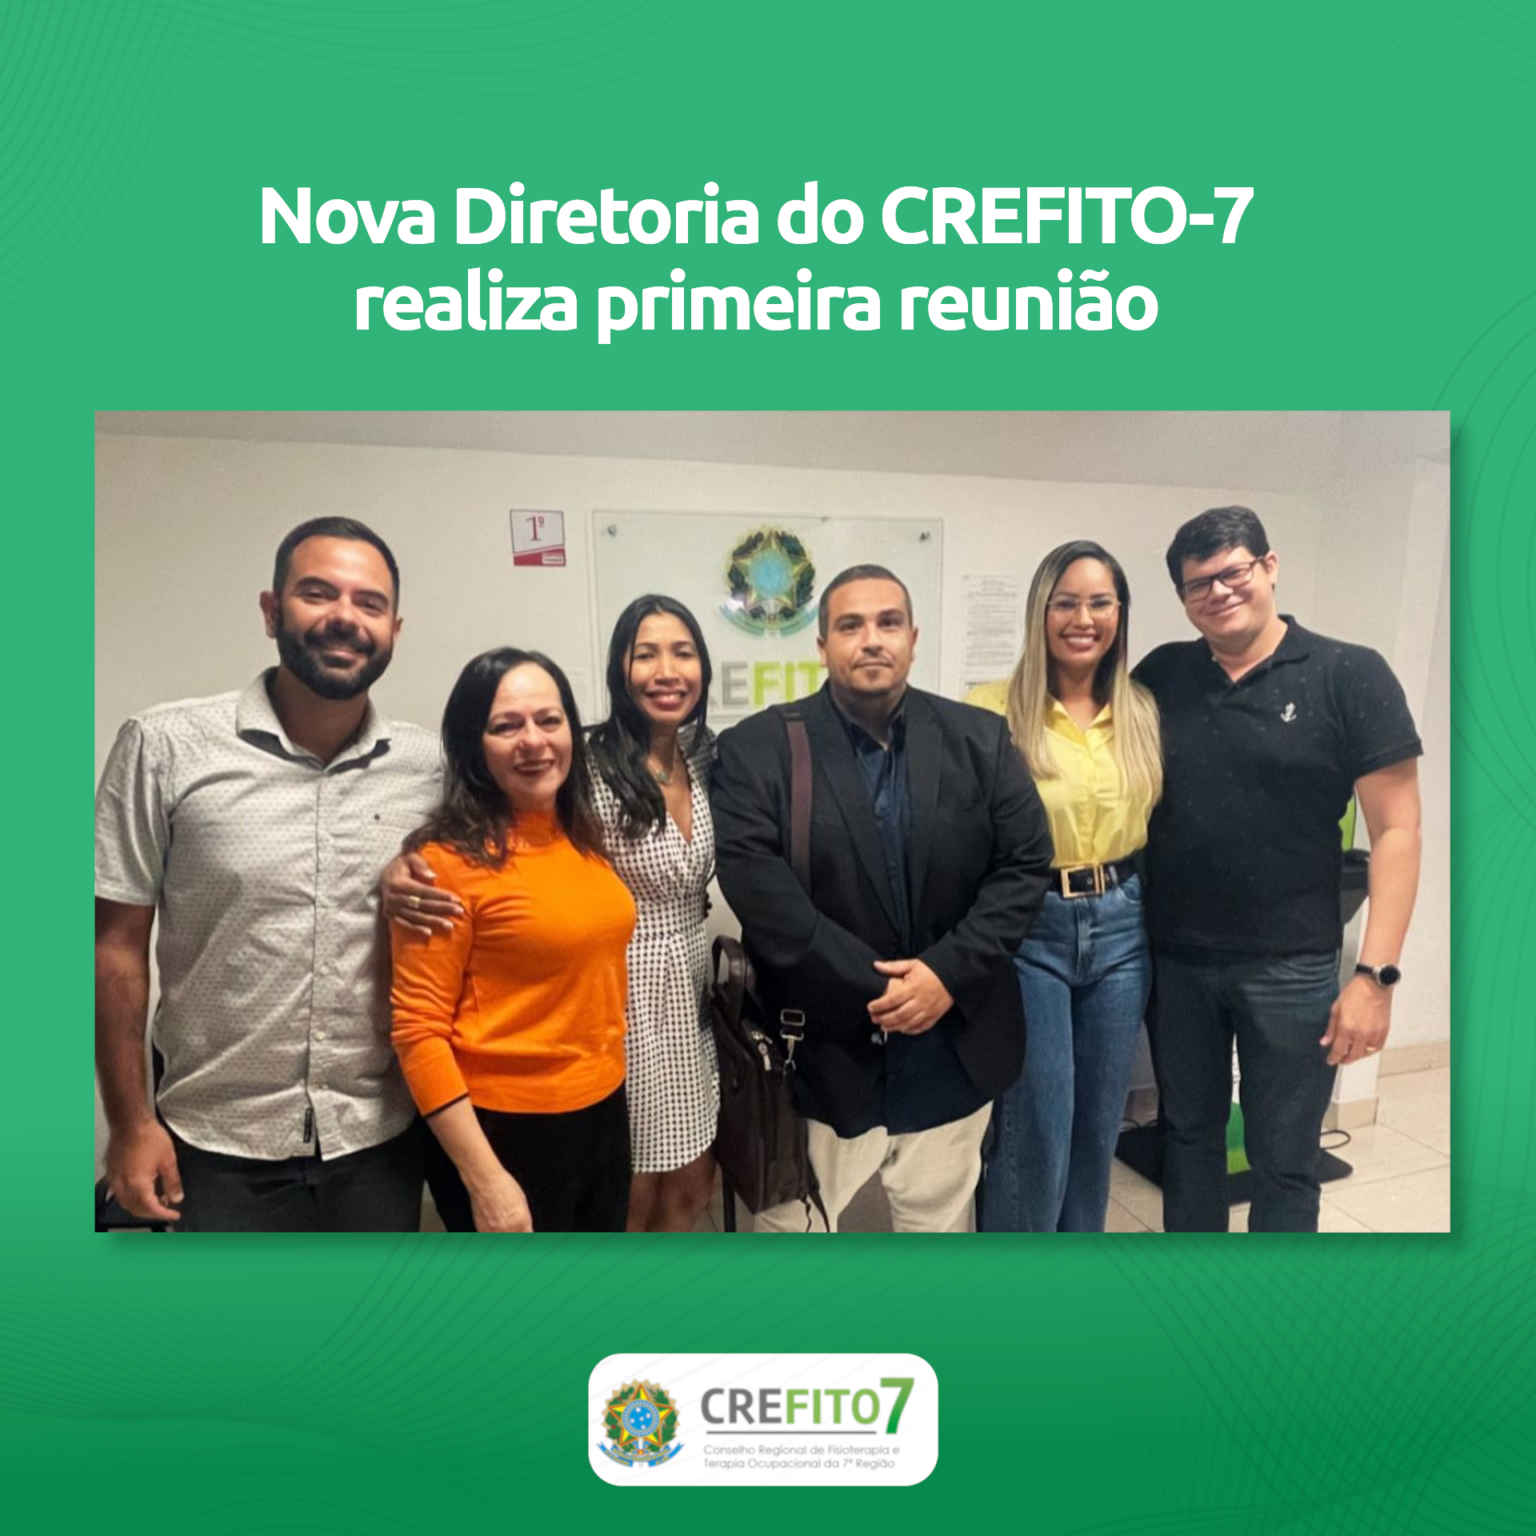 Nova Diretoria do CREFITO-7 realiza primeira reunião